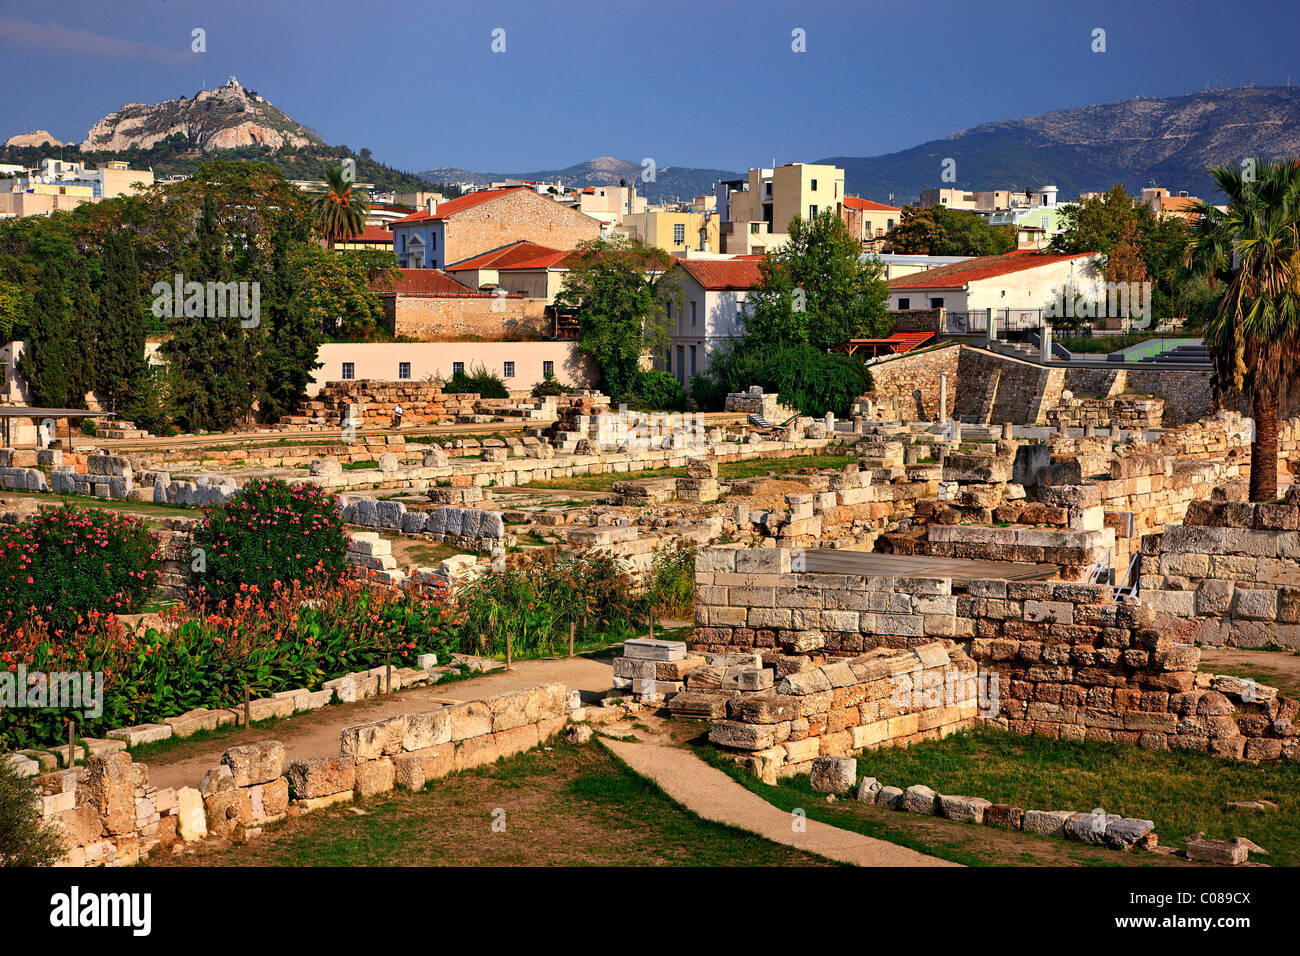 Kerameikos era uno de los más bellos 'suburbs' de la antigua Atenas y su más impresionante Necrópolis. Atenas, Grecia Foto de stock